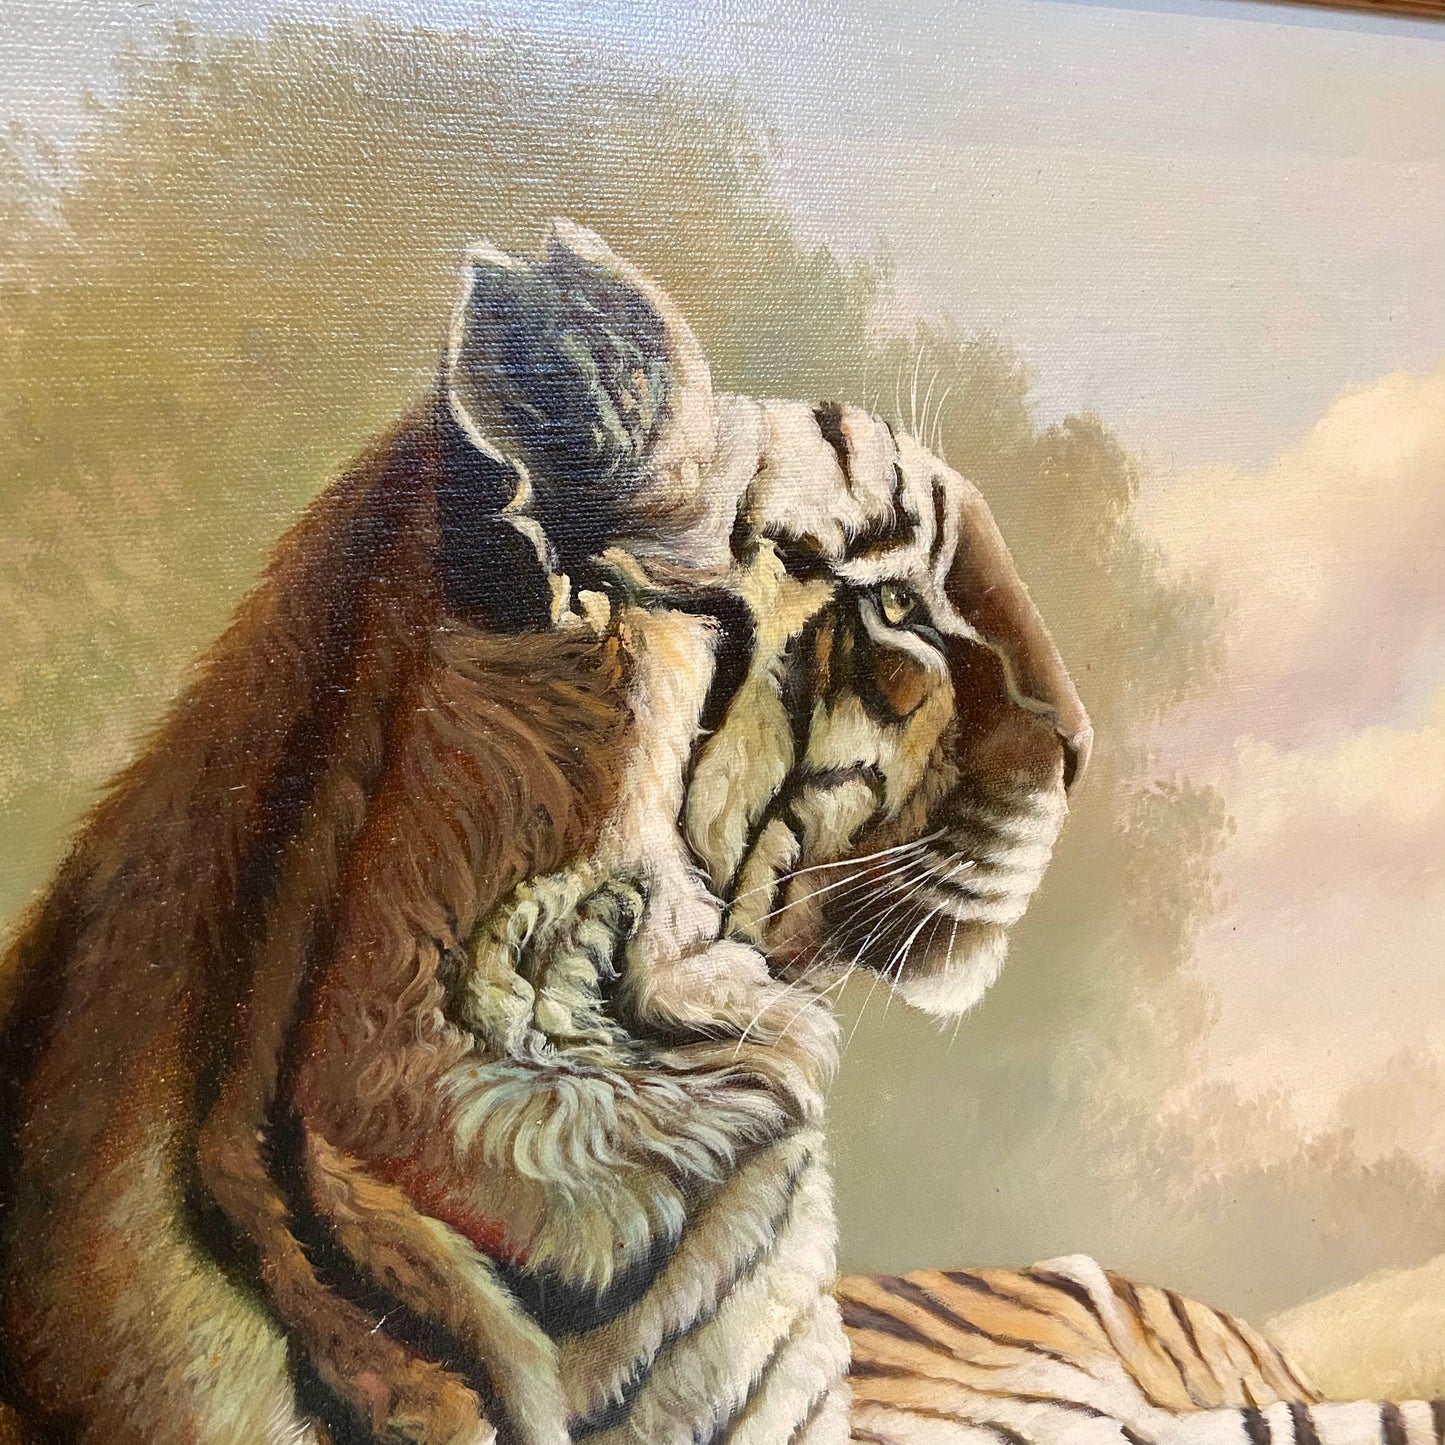 Framed Vintage Bengal Tiger Artwork